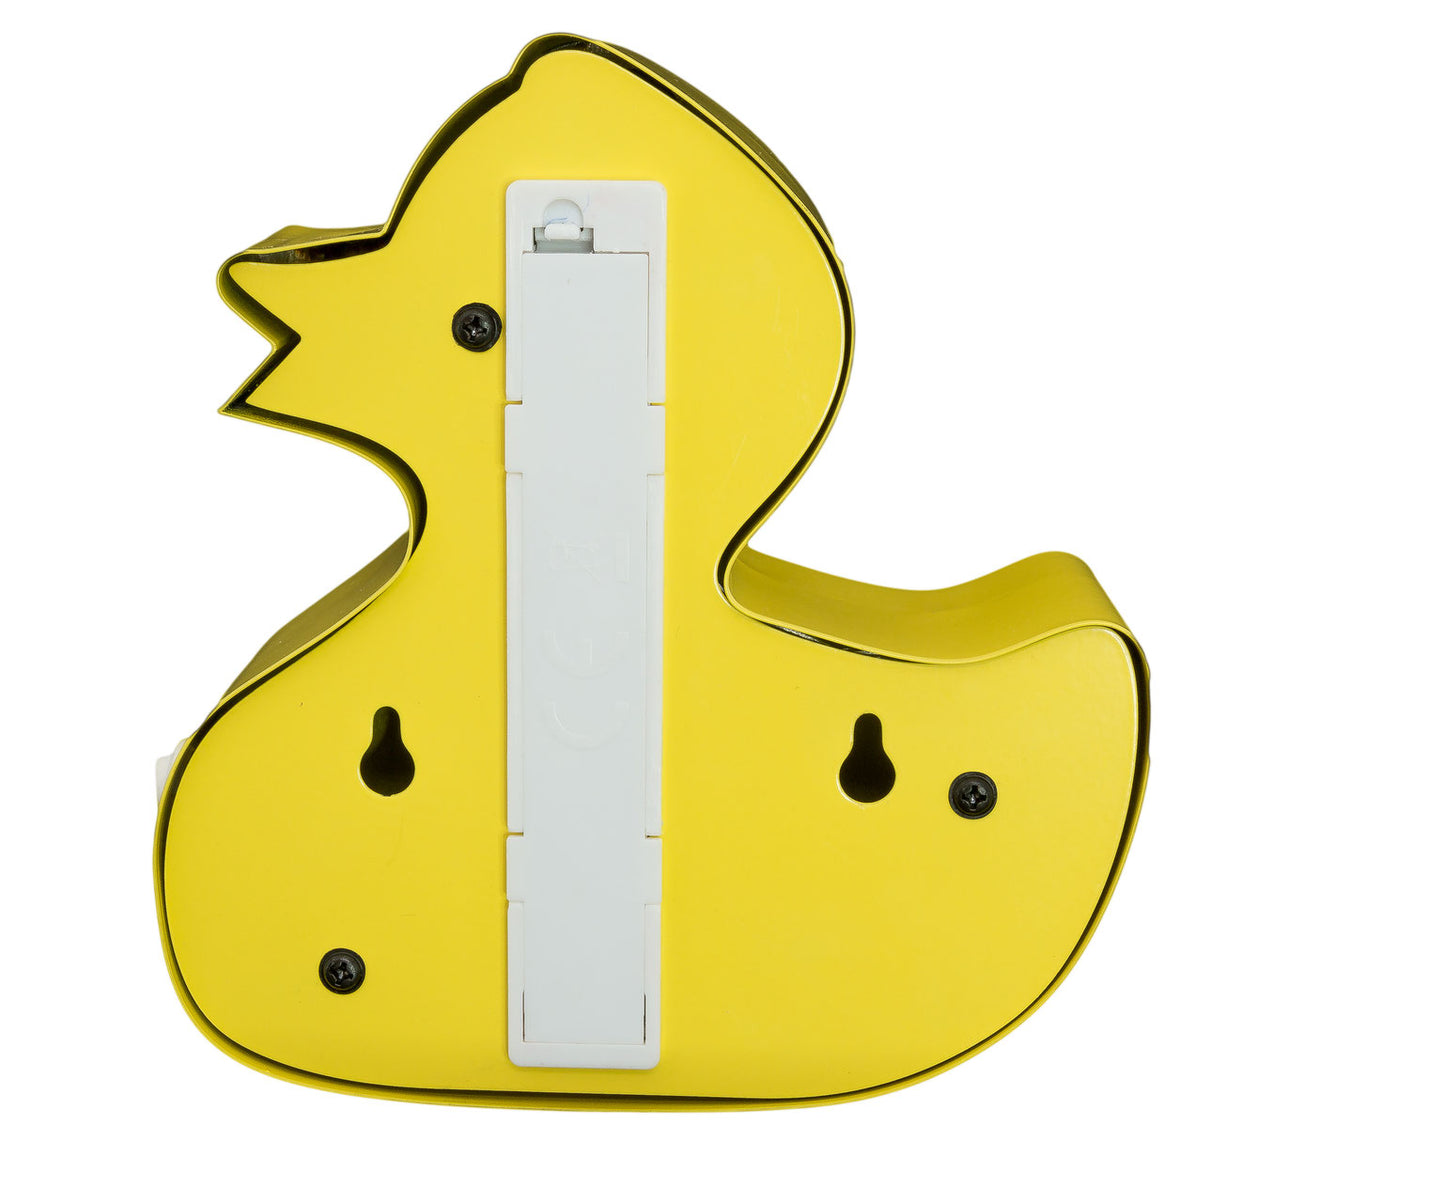 Lámpara de pato amarillo